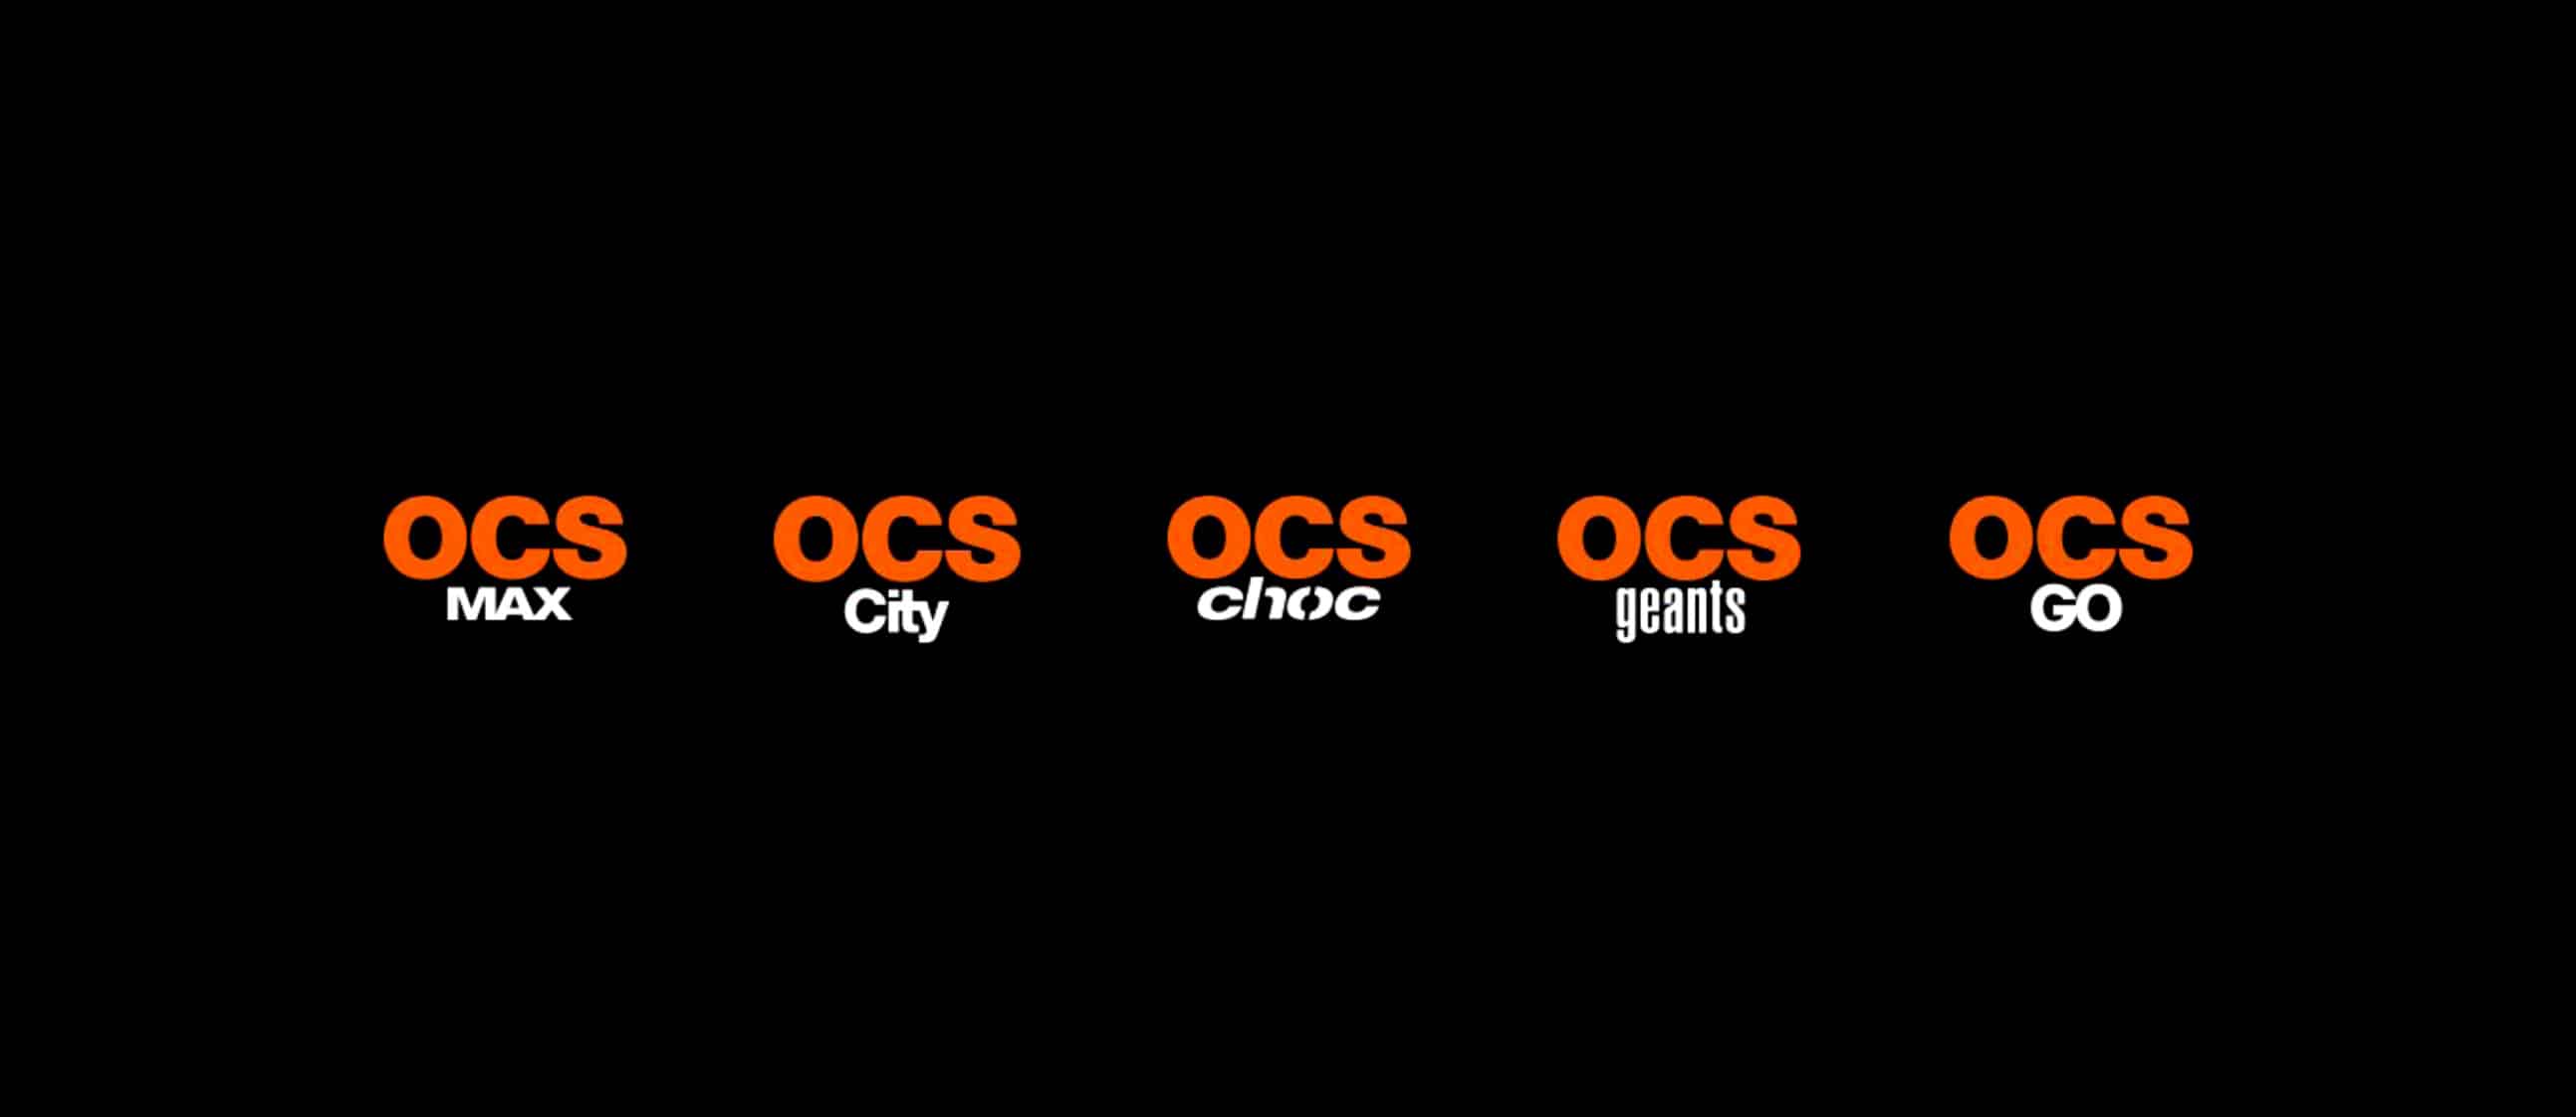 Toutes les coordonnées pour joindre le service client OCS - Contacter OCS | Assistance, et service clients de #OCS et #Orange